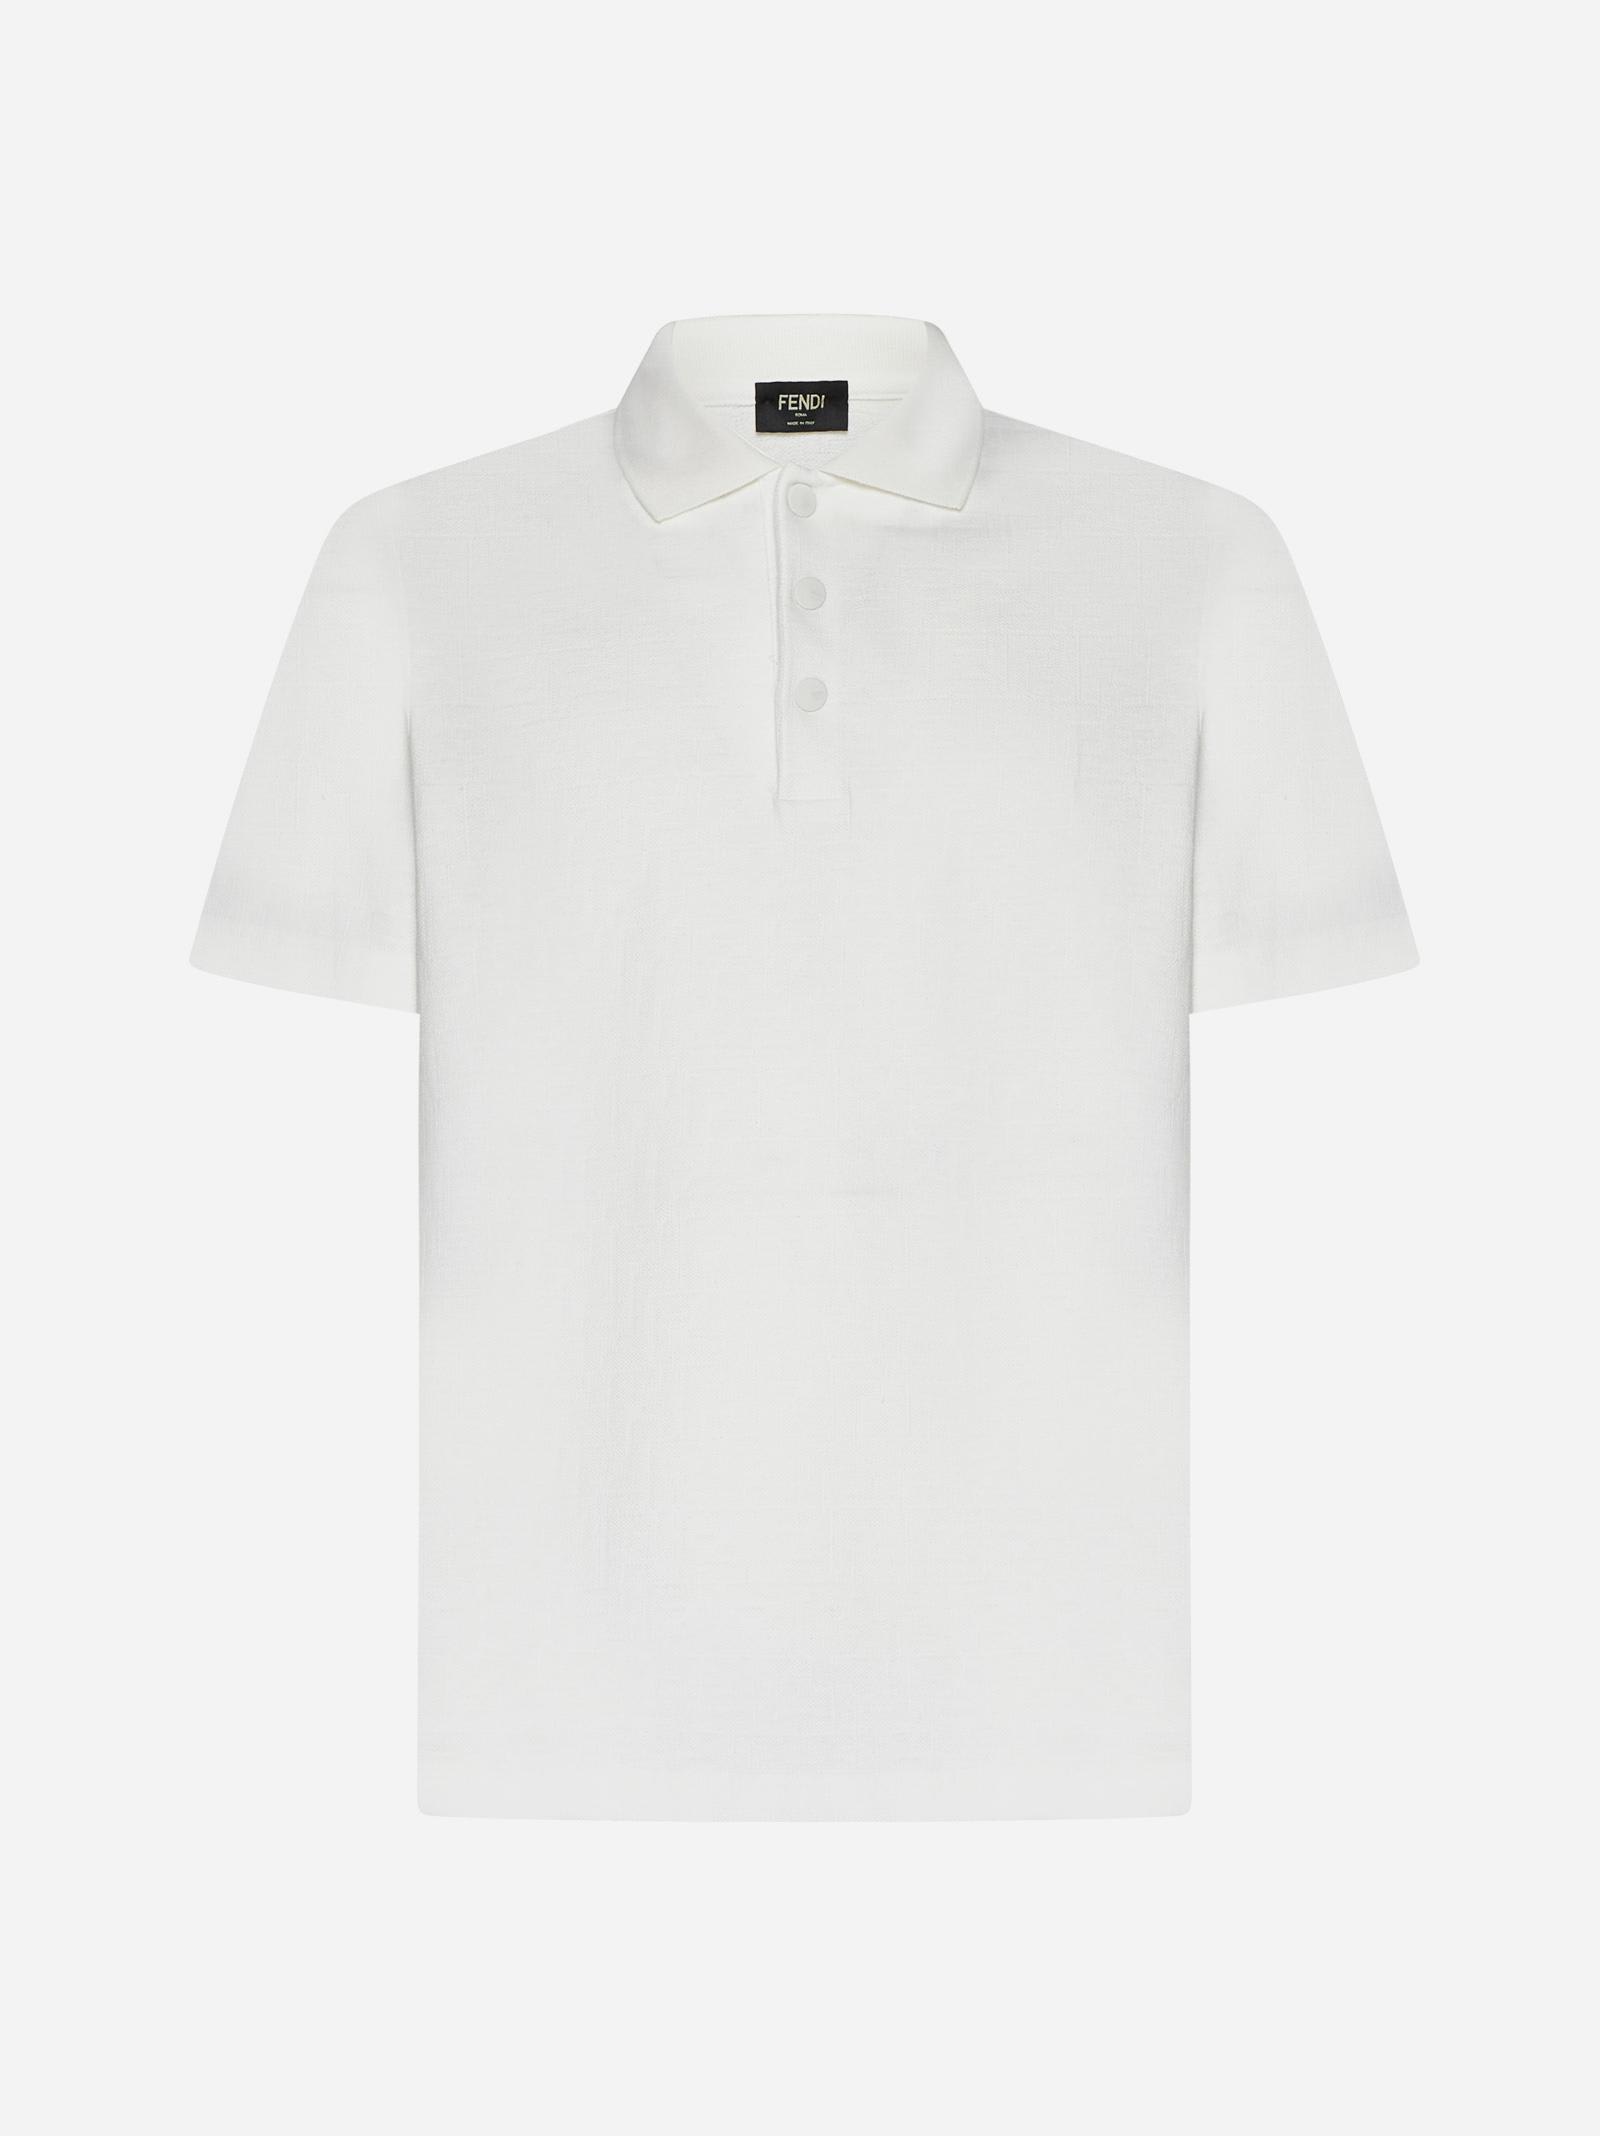 Fendi Ff Pique Cotton Polo Shirt